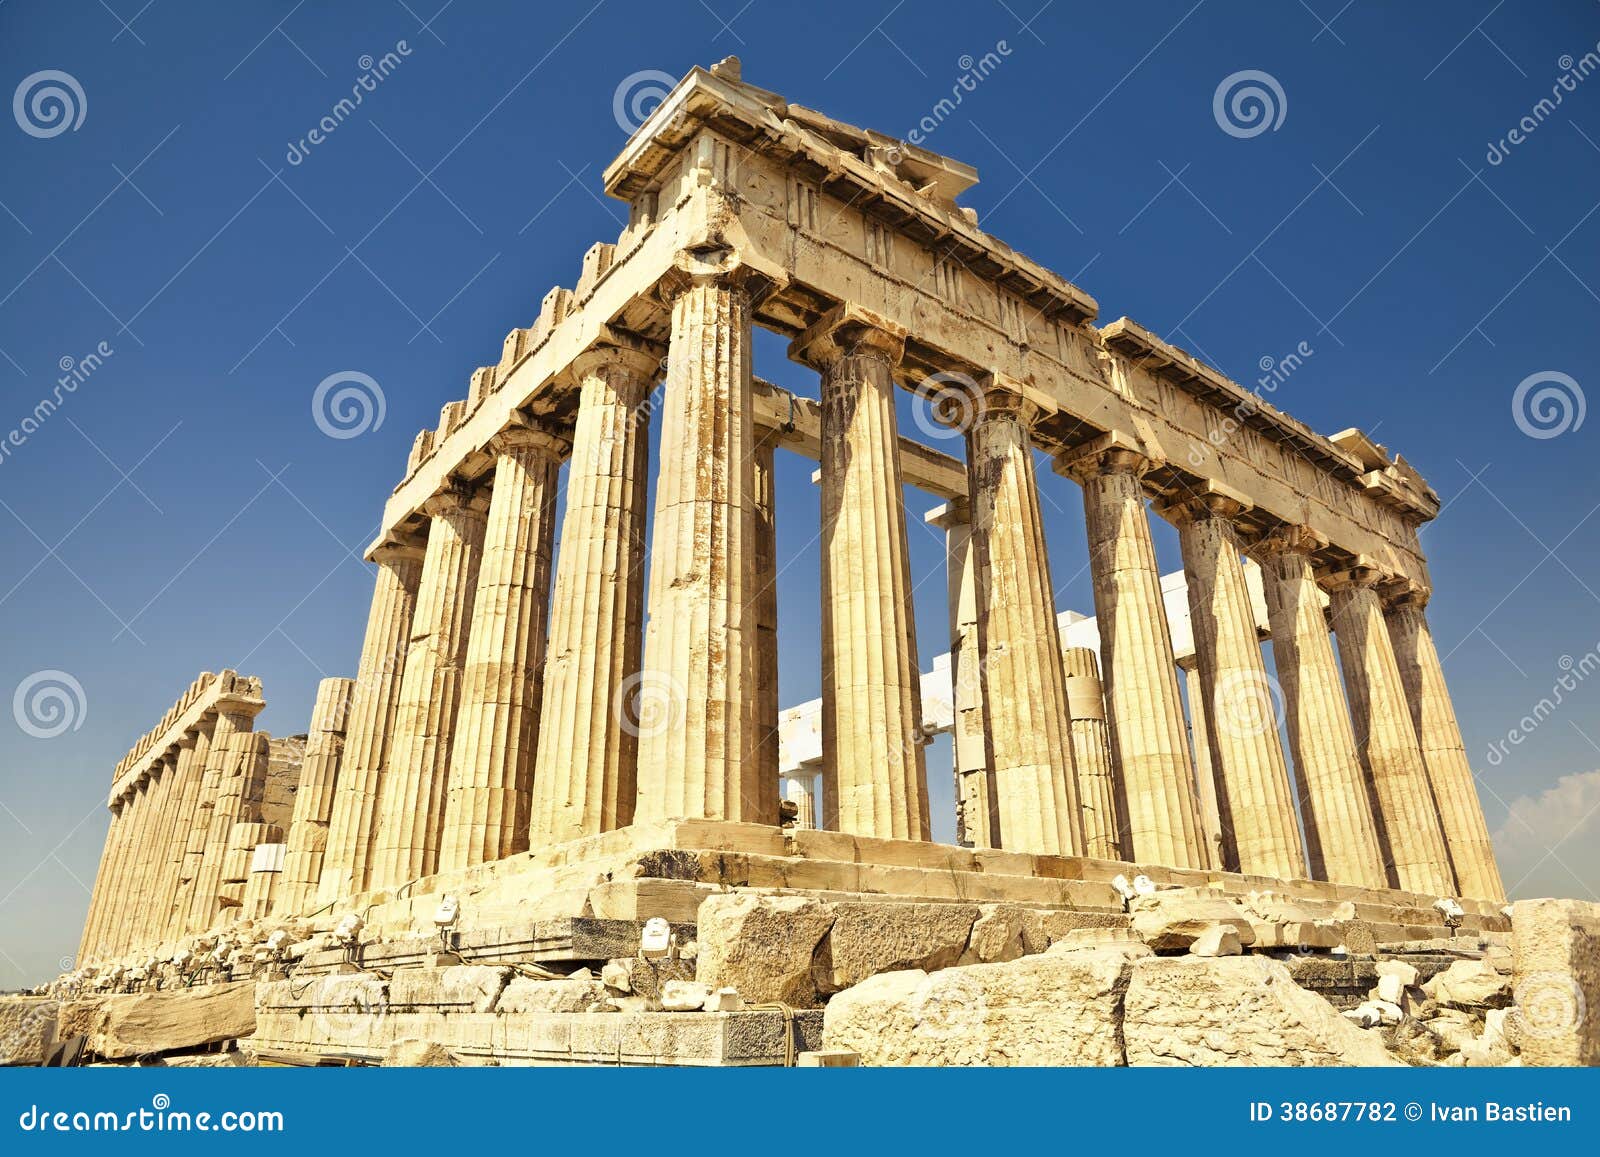 parthenon on the acropolis in athens, greece